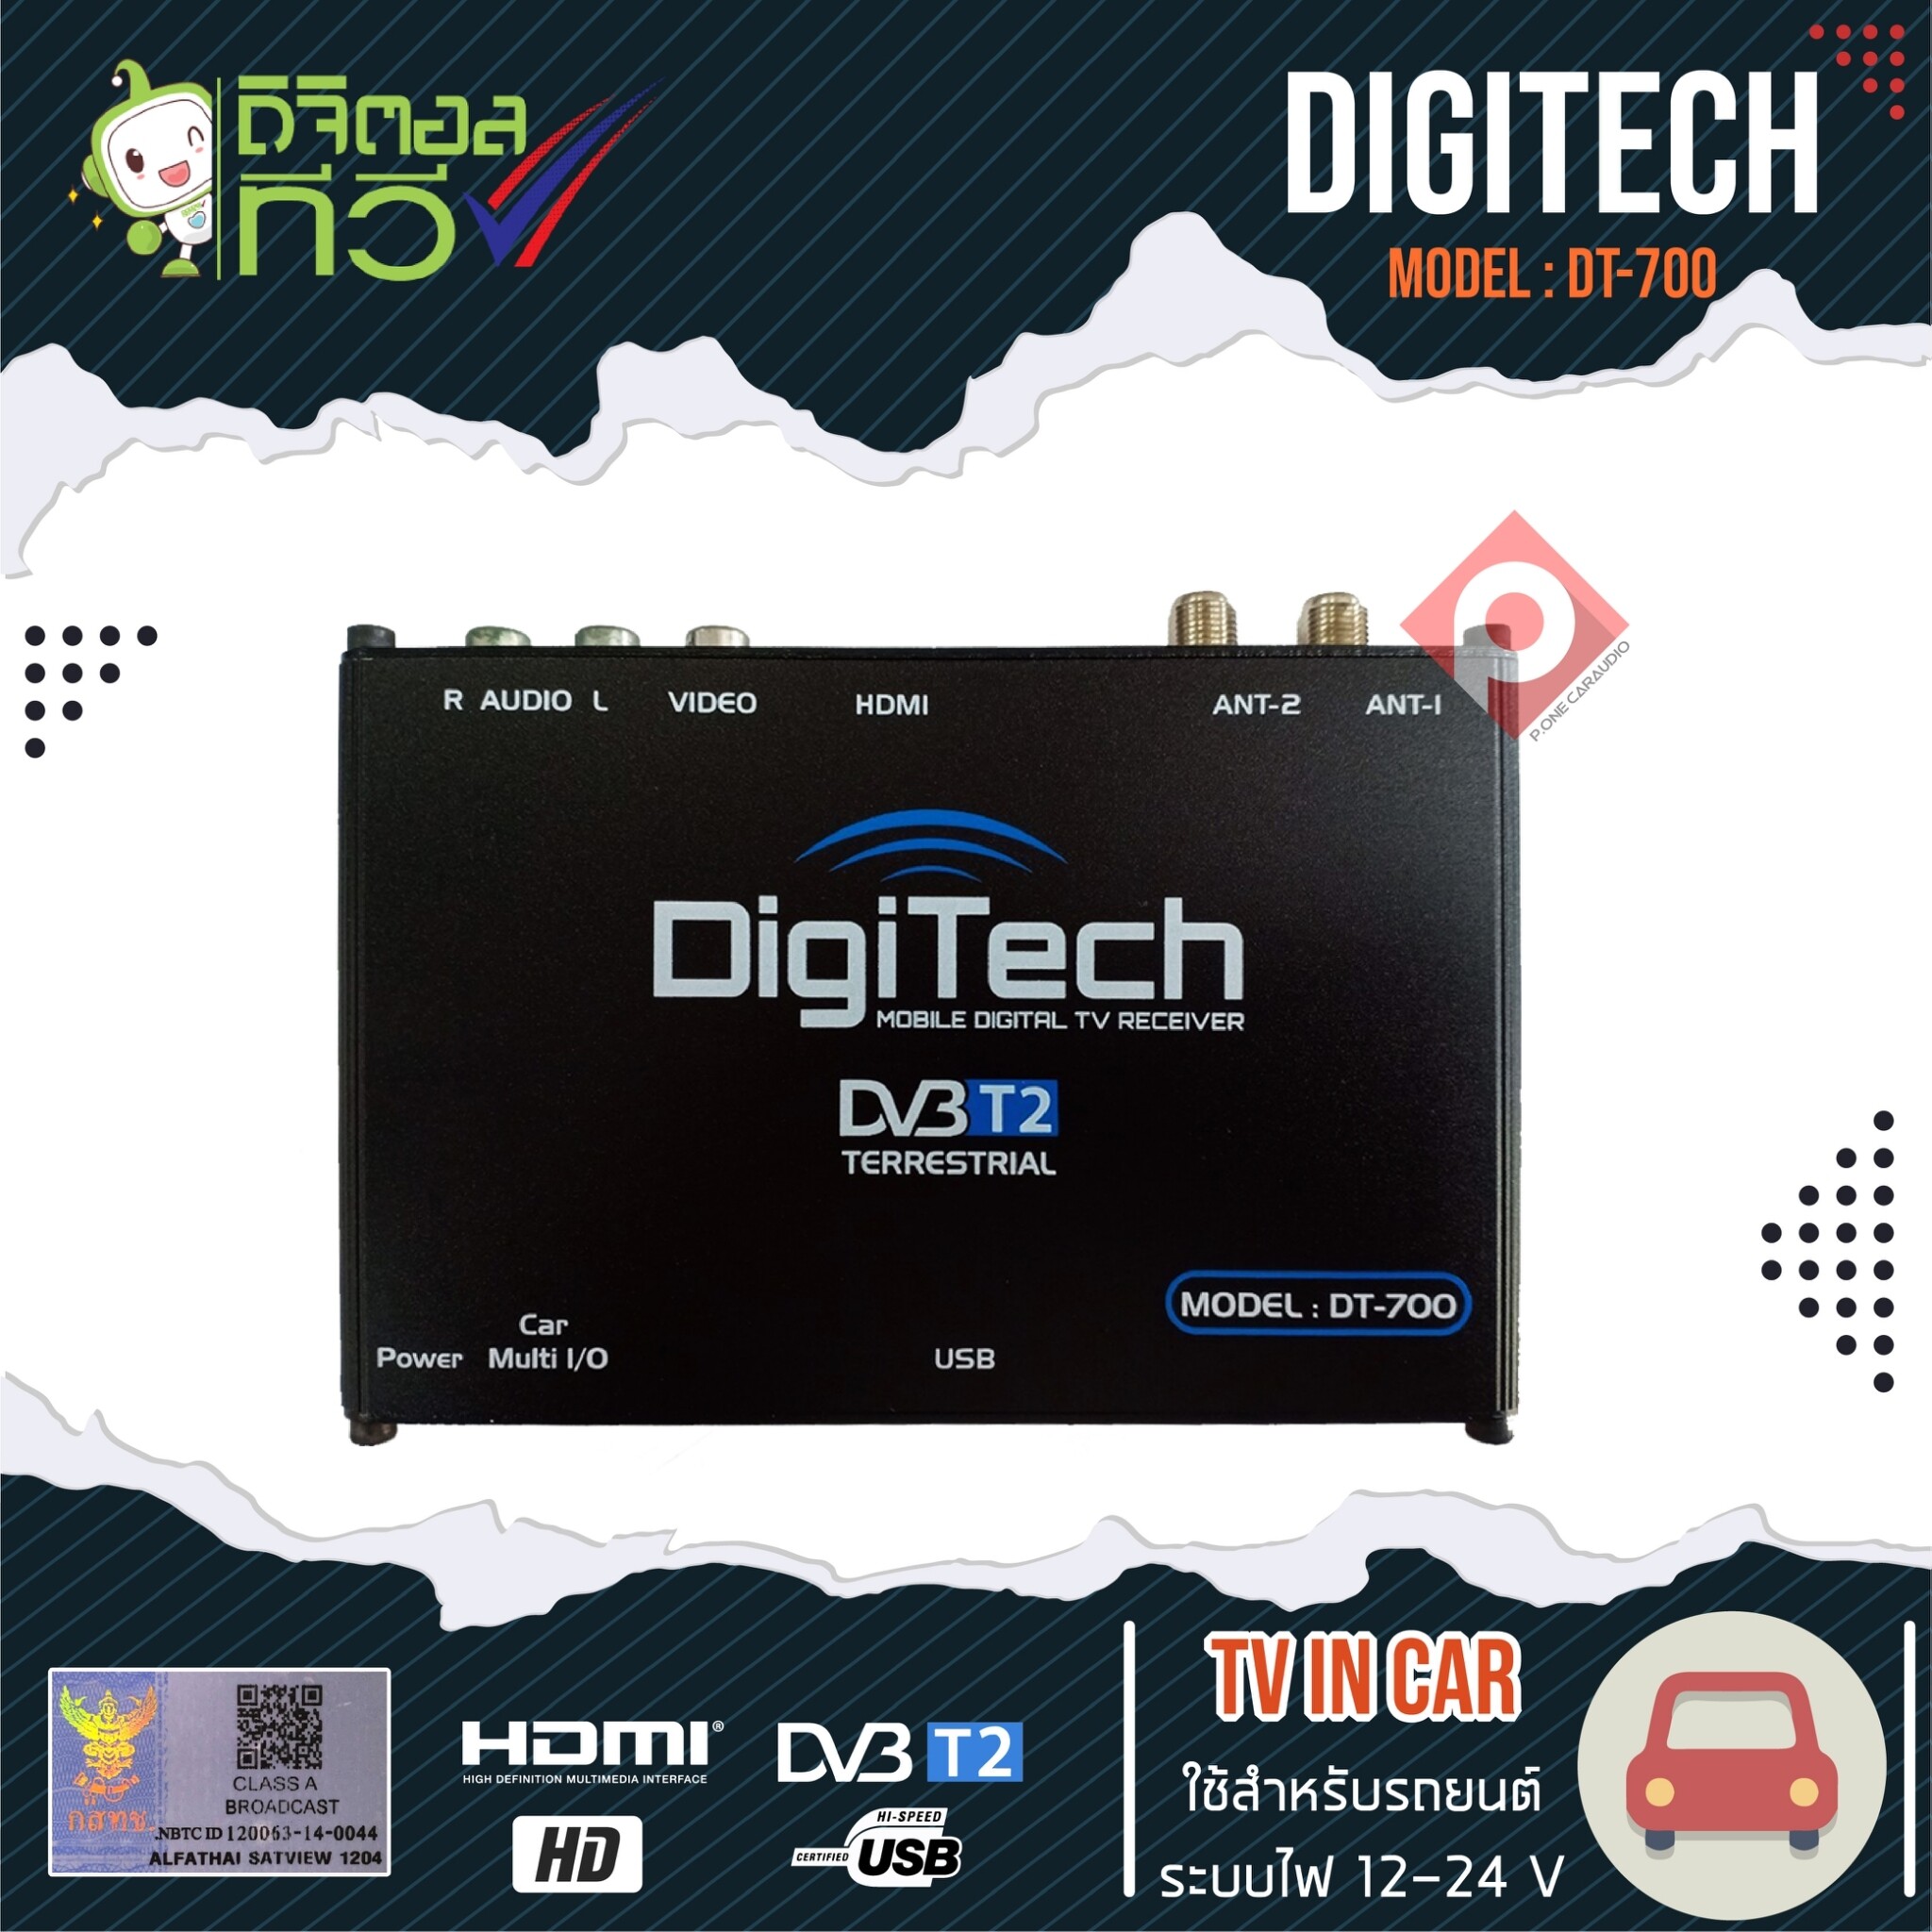 กล่องดิจิตอลทีวี DIGITECH DT-700  เสาสัญญาณทีวี 2 ชุด ราคา 1,950 บาท